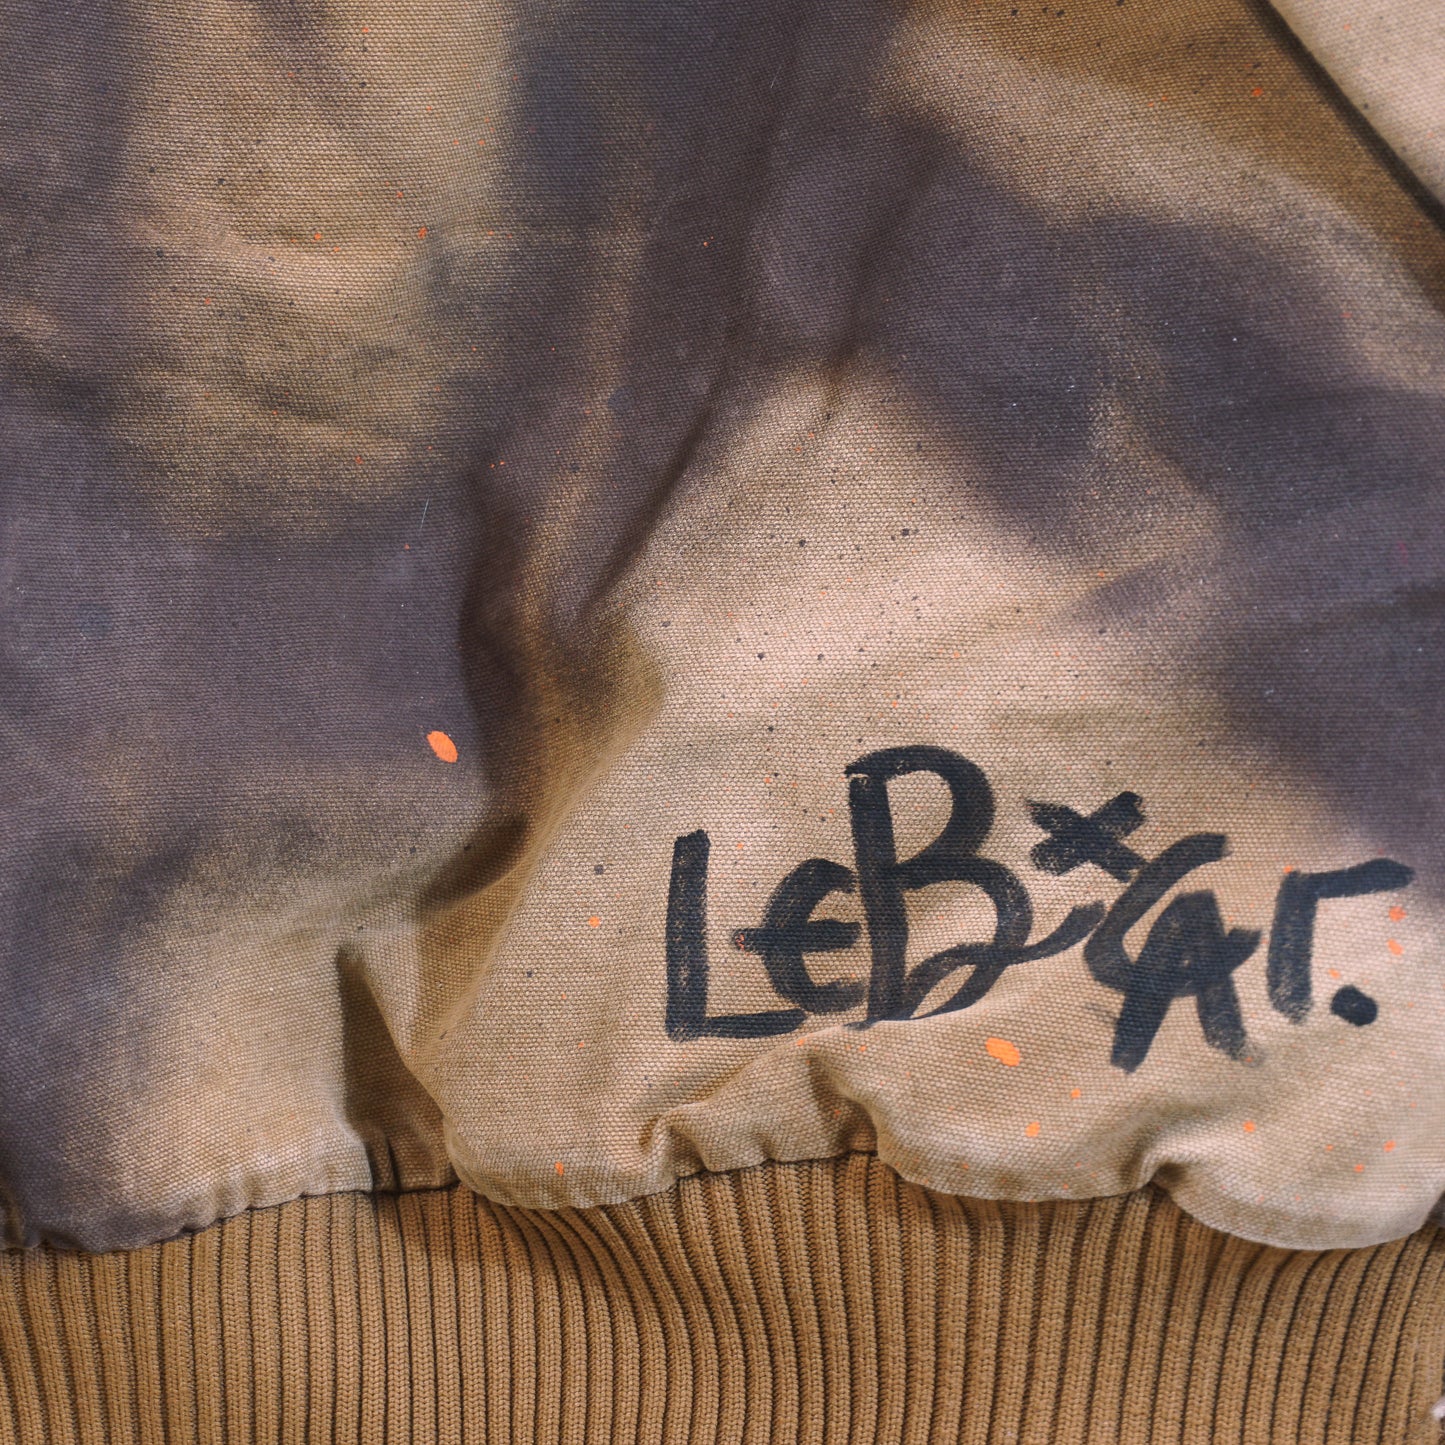 Lebicar x Marché Floh Carhartt Jacket (XL)